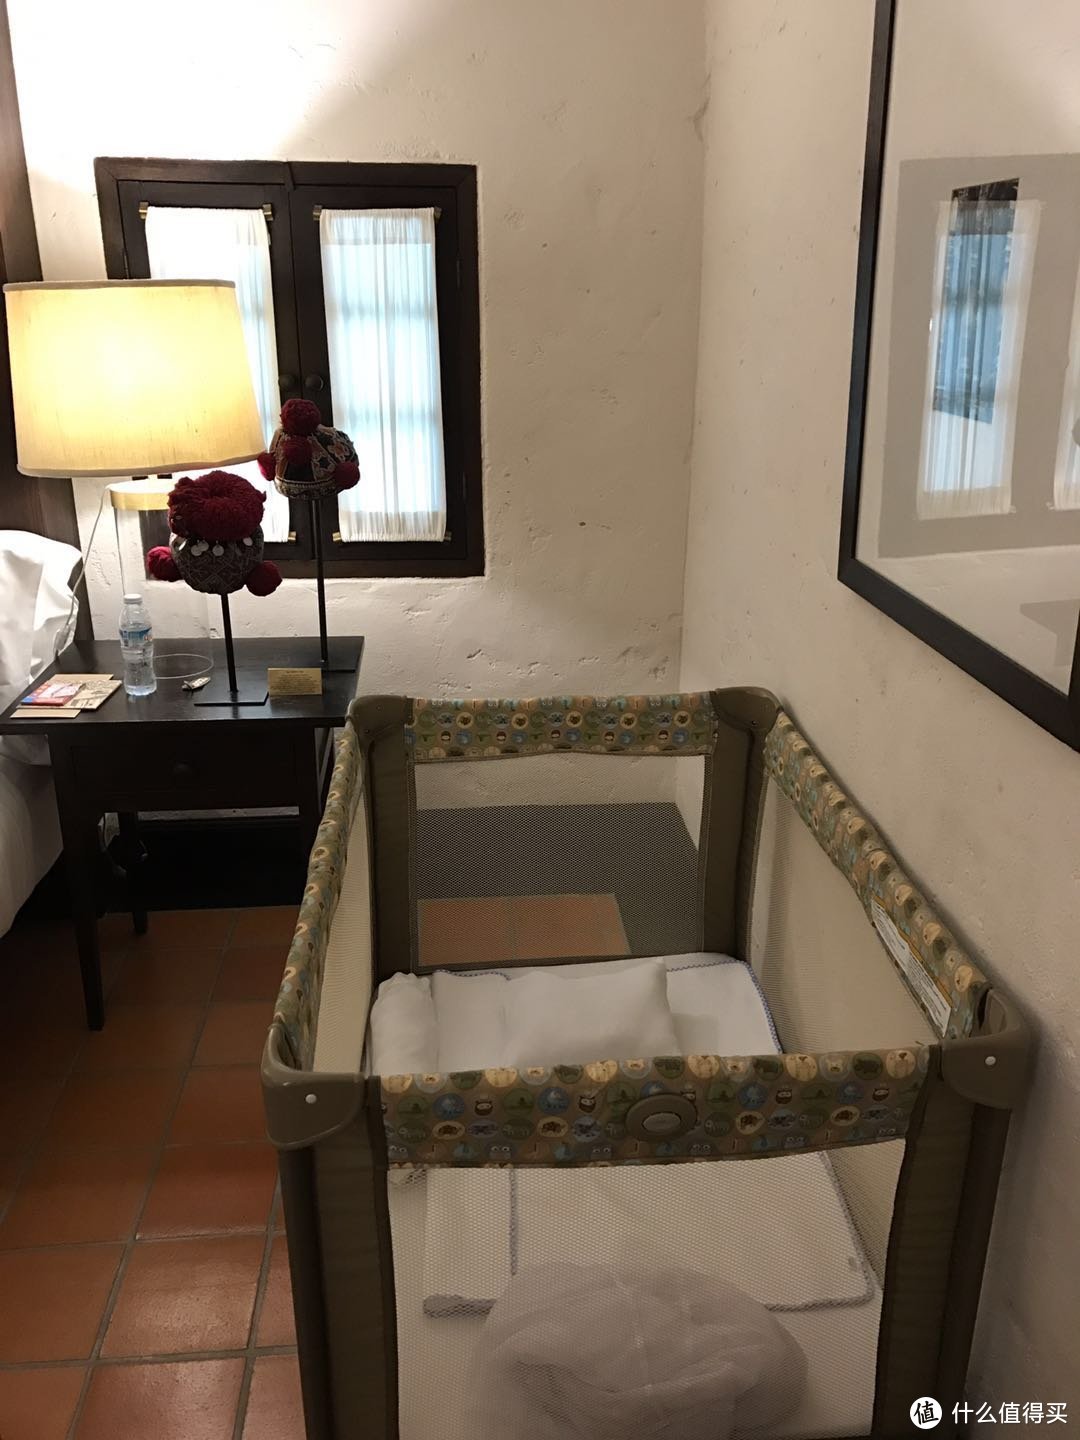 酒店帮忙准备的婴儿游戏床